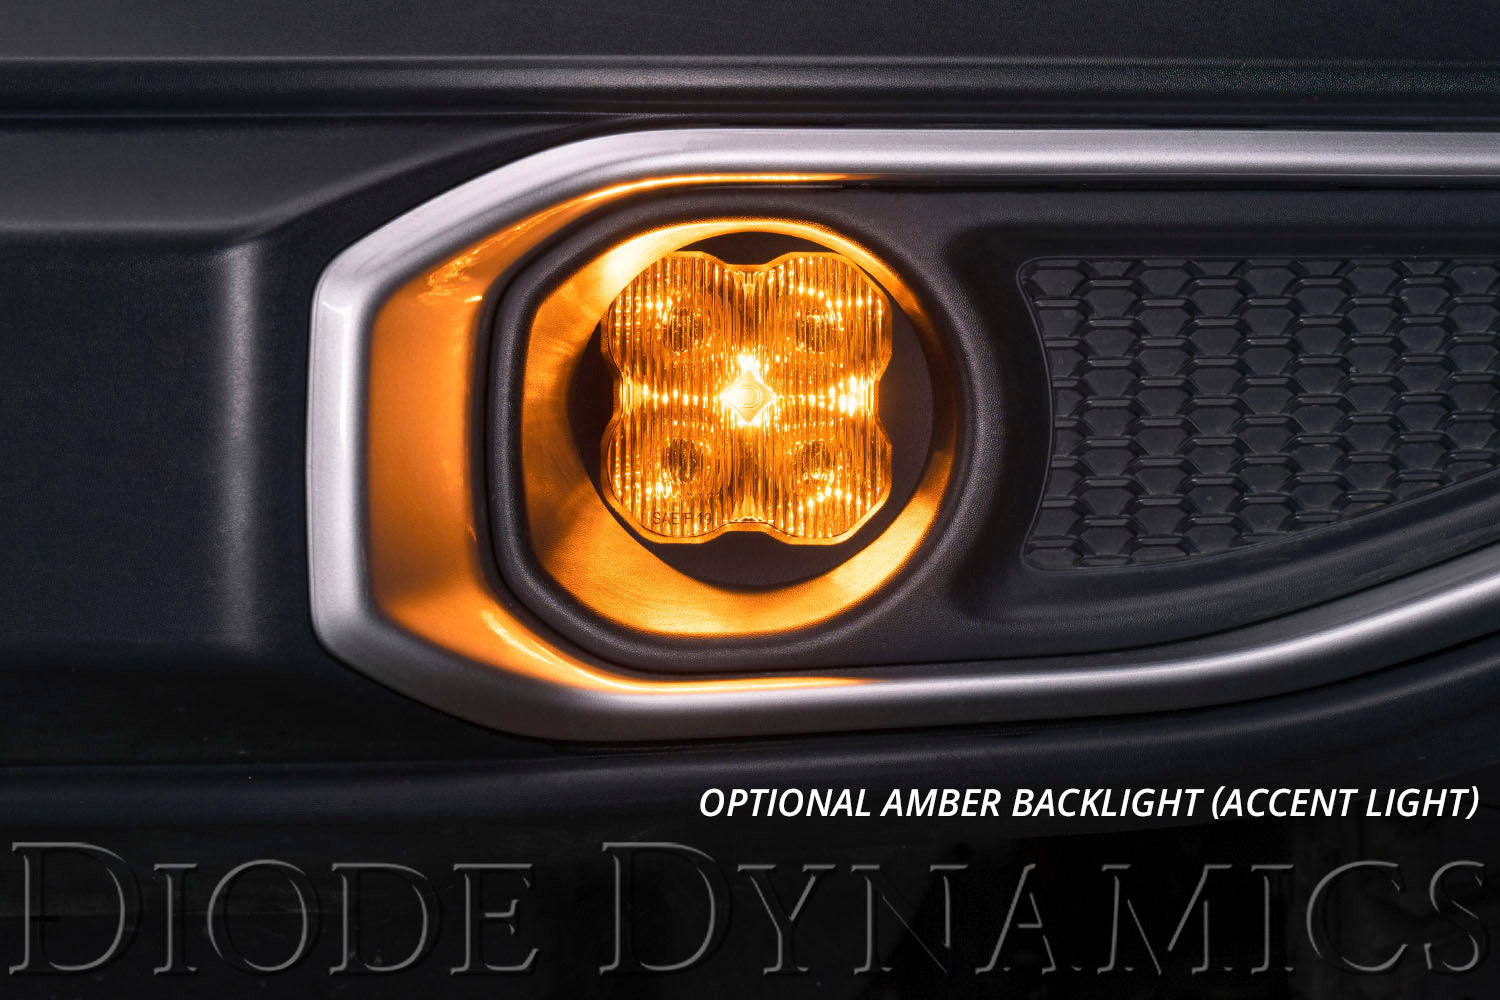 SS3 LED Fog Light Kit for 2011-2013 Acura TSX White SAE Fog Pro Diode Dynamics